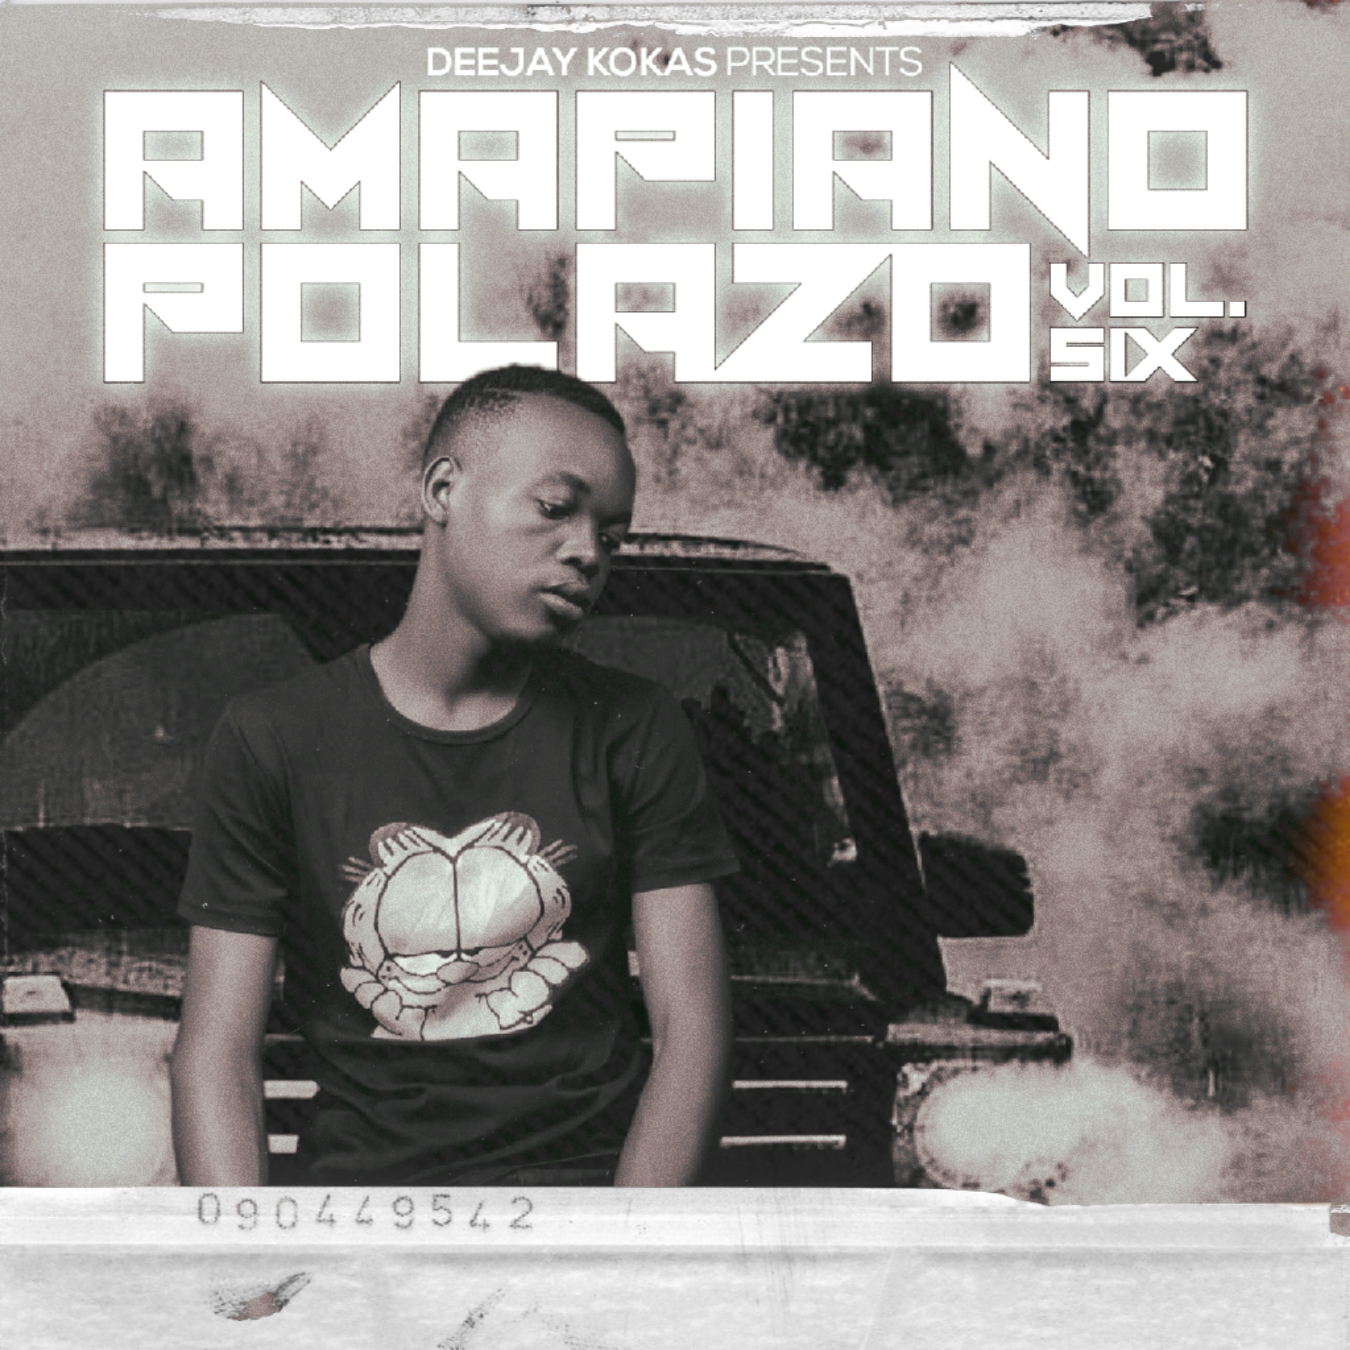 Amapiano paloza mixtape vol 6